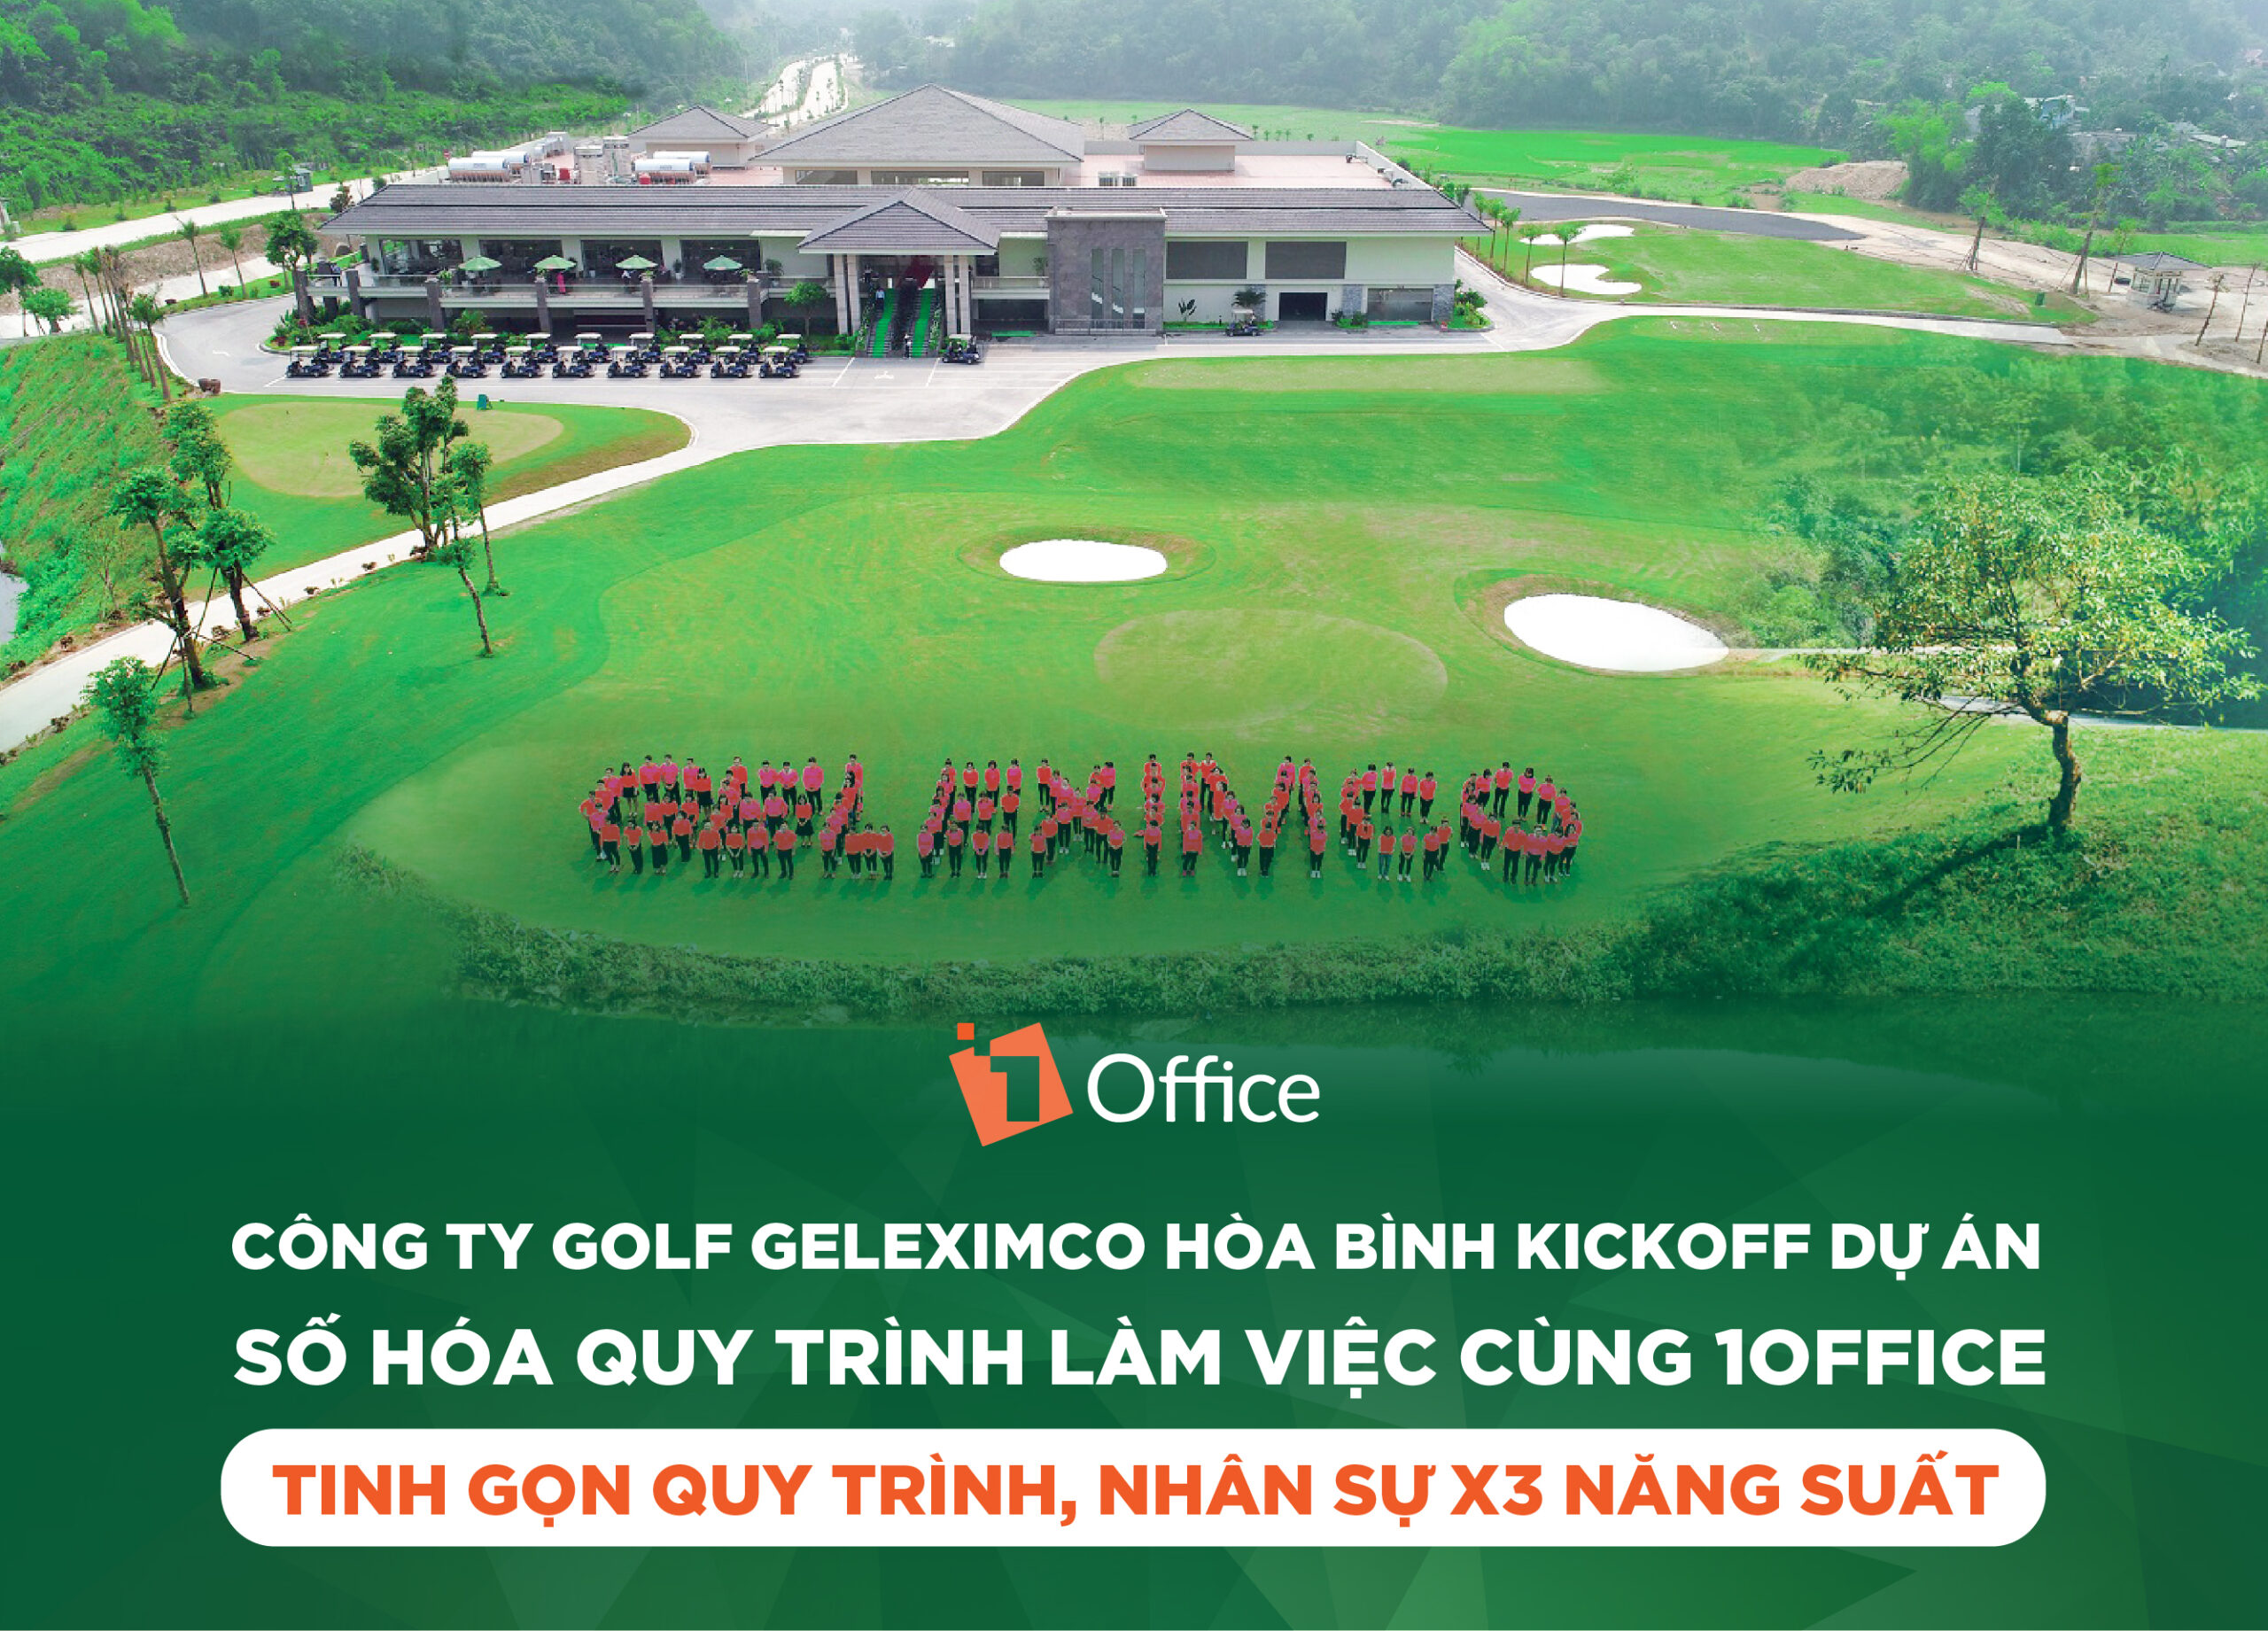 Công ty Golf Geleximco chuyển đổi số cùng 1Office: Tinh gọn quy trình, nhân sự X3 năng suất